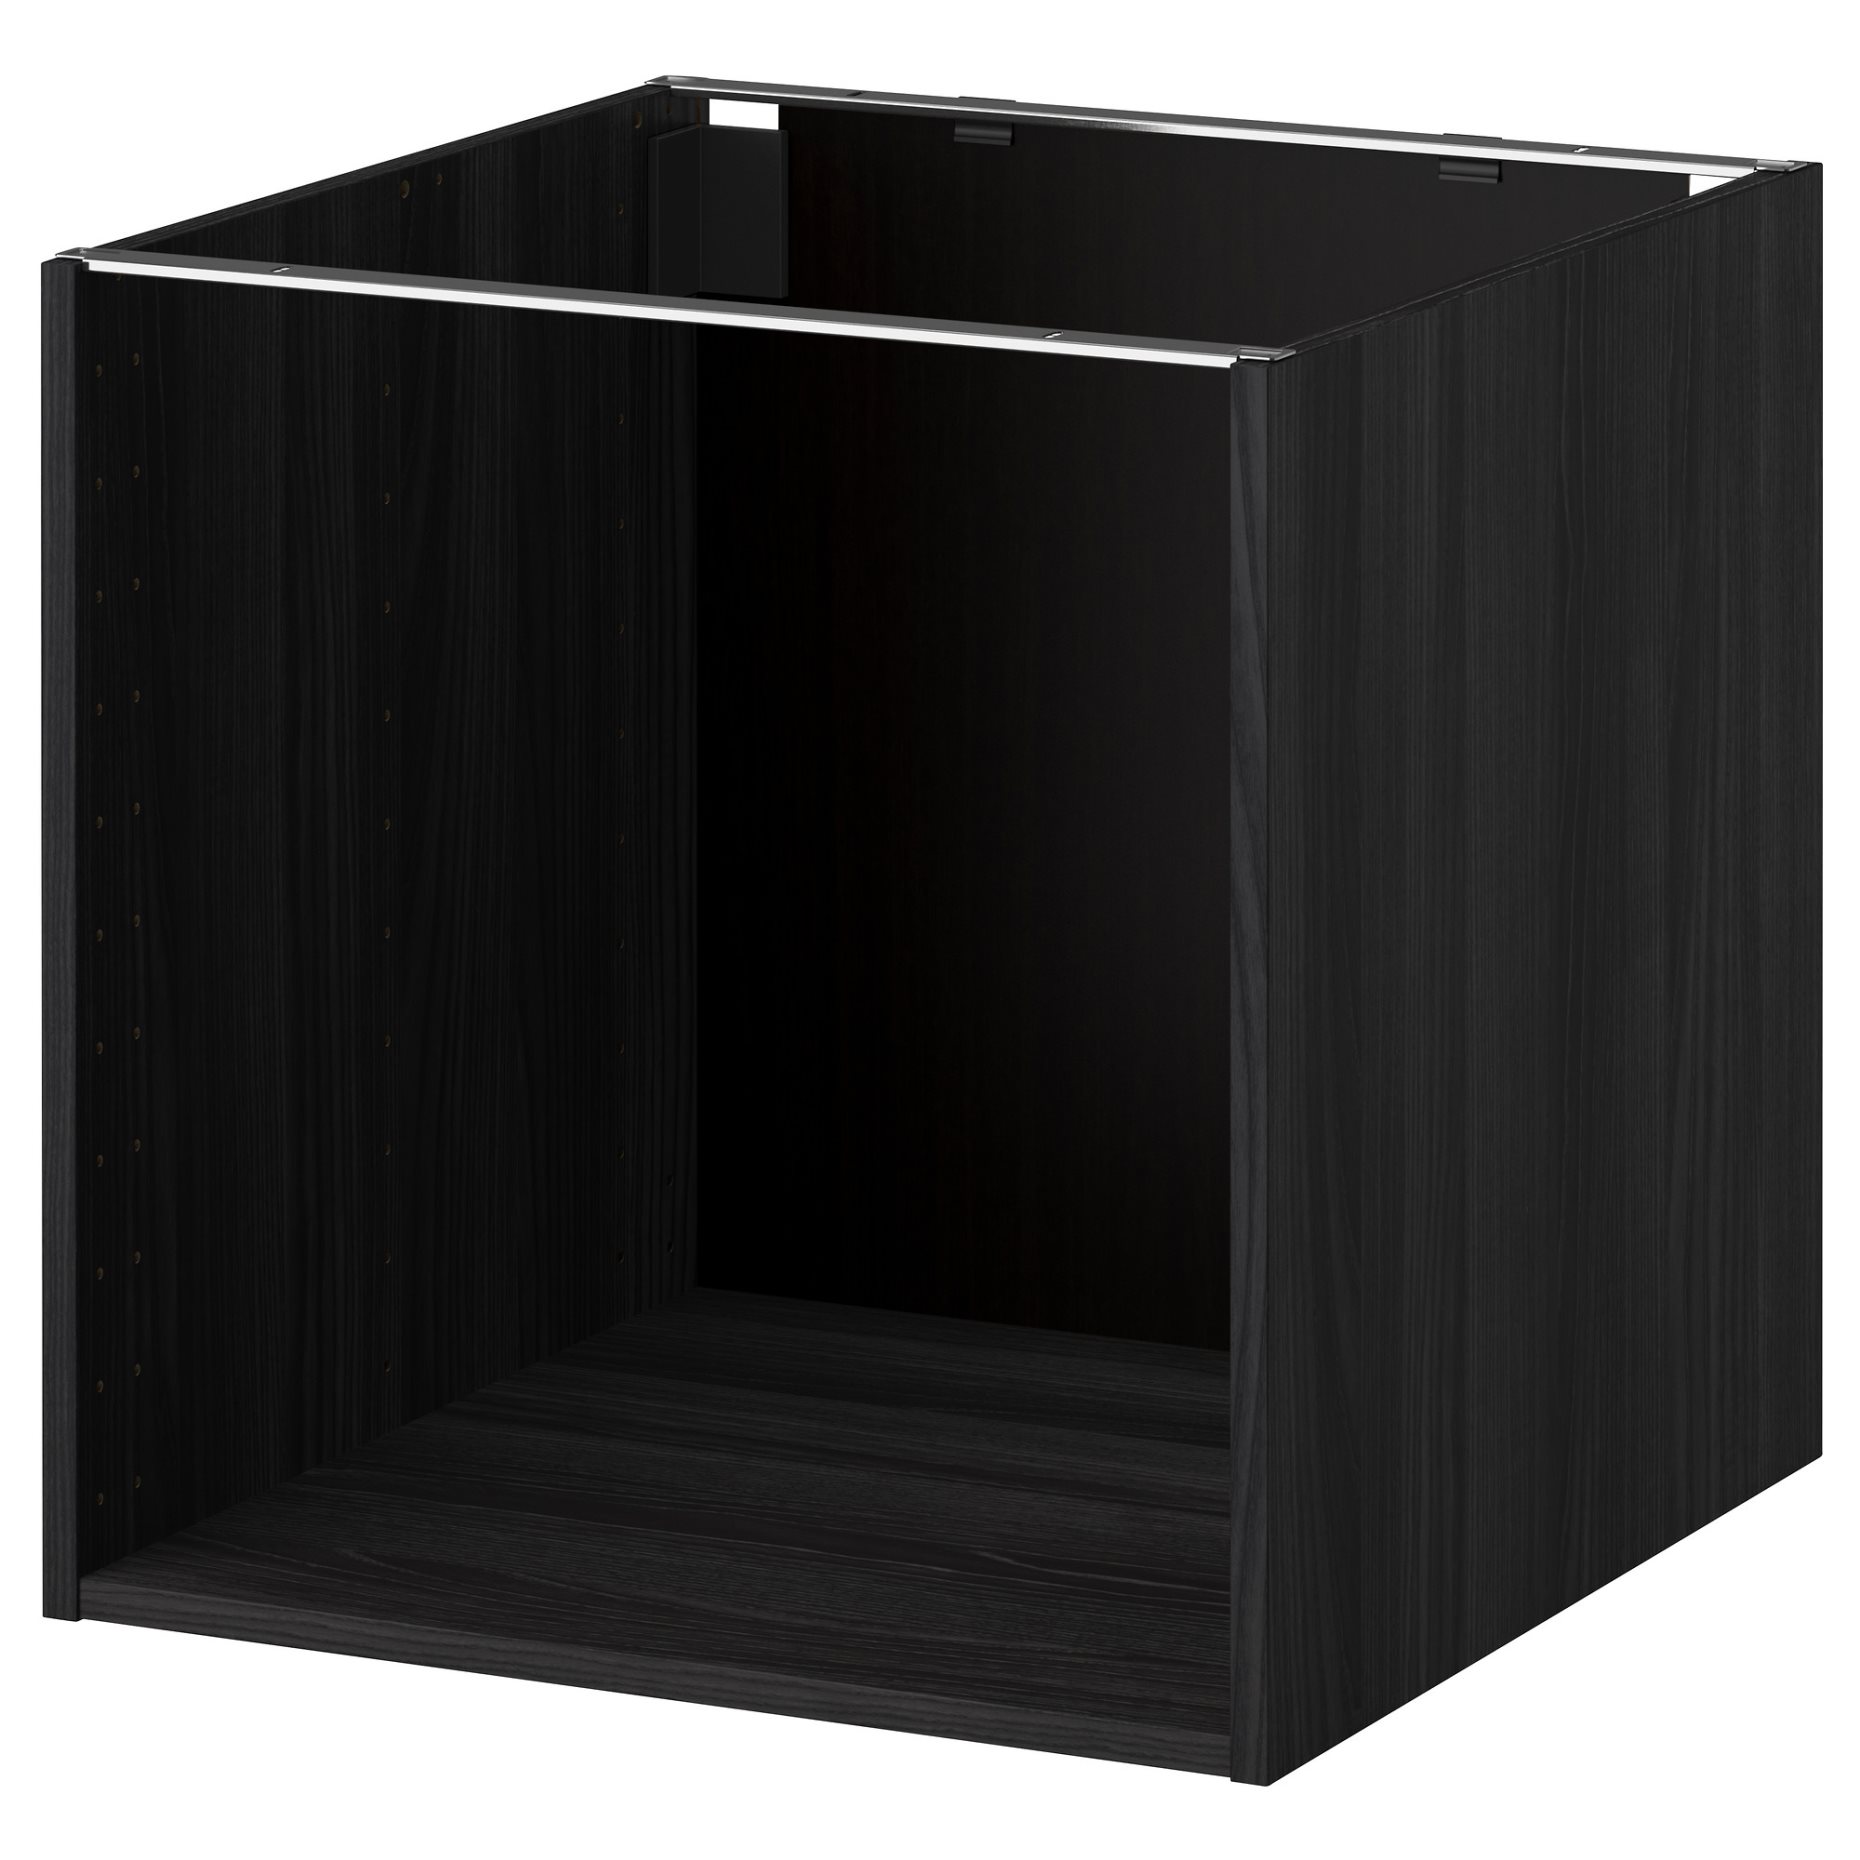 METOD, base cabinet frame, 802.461.21